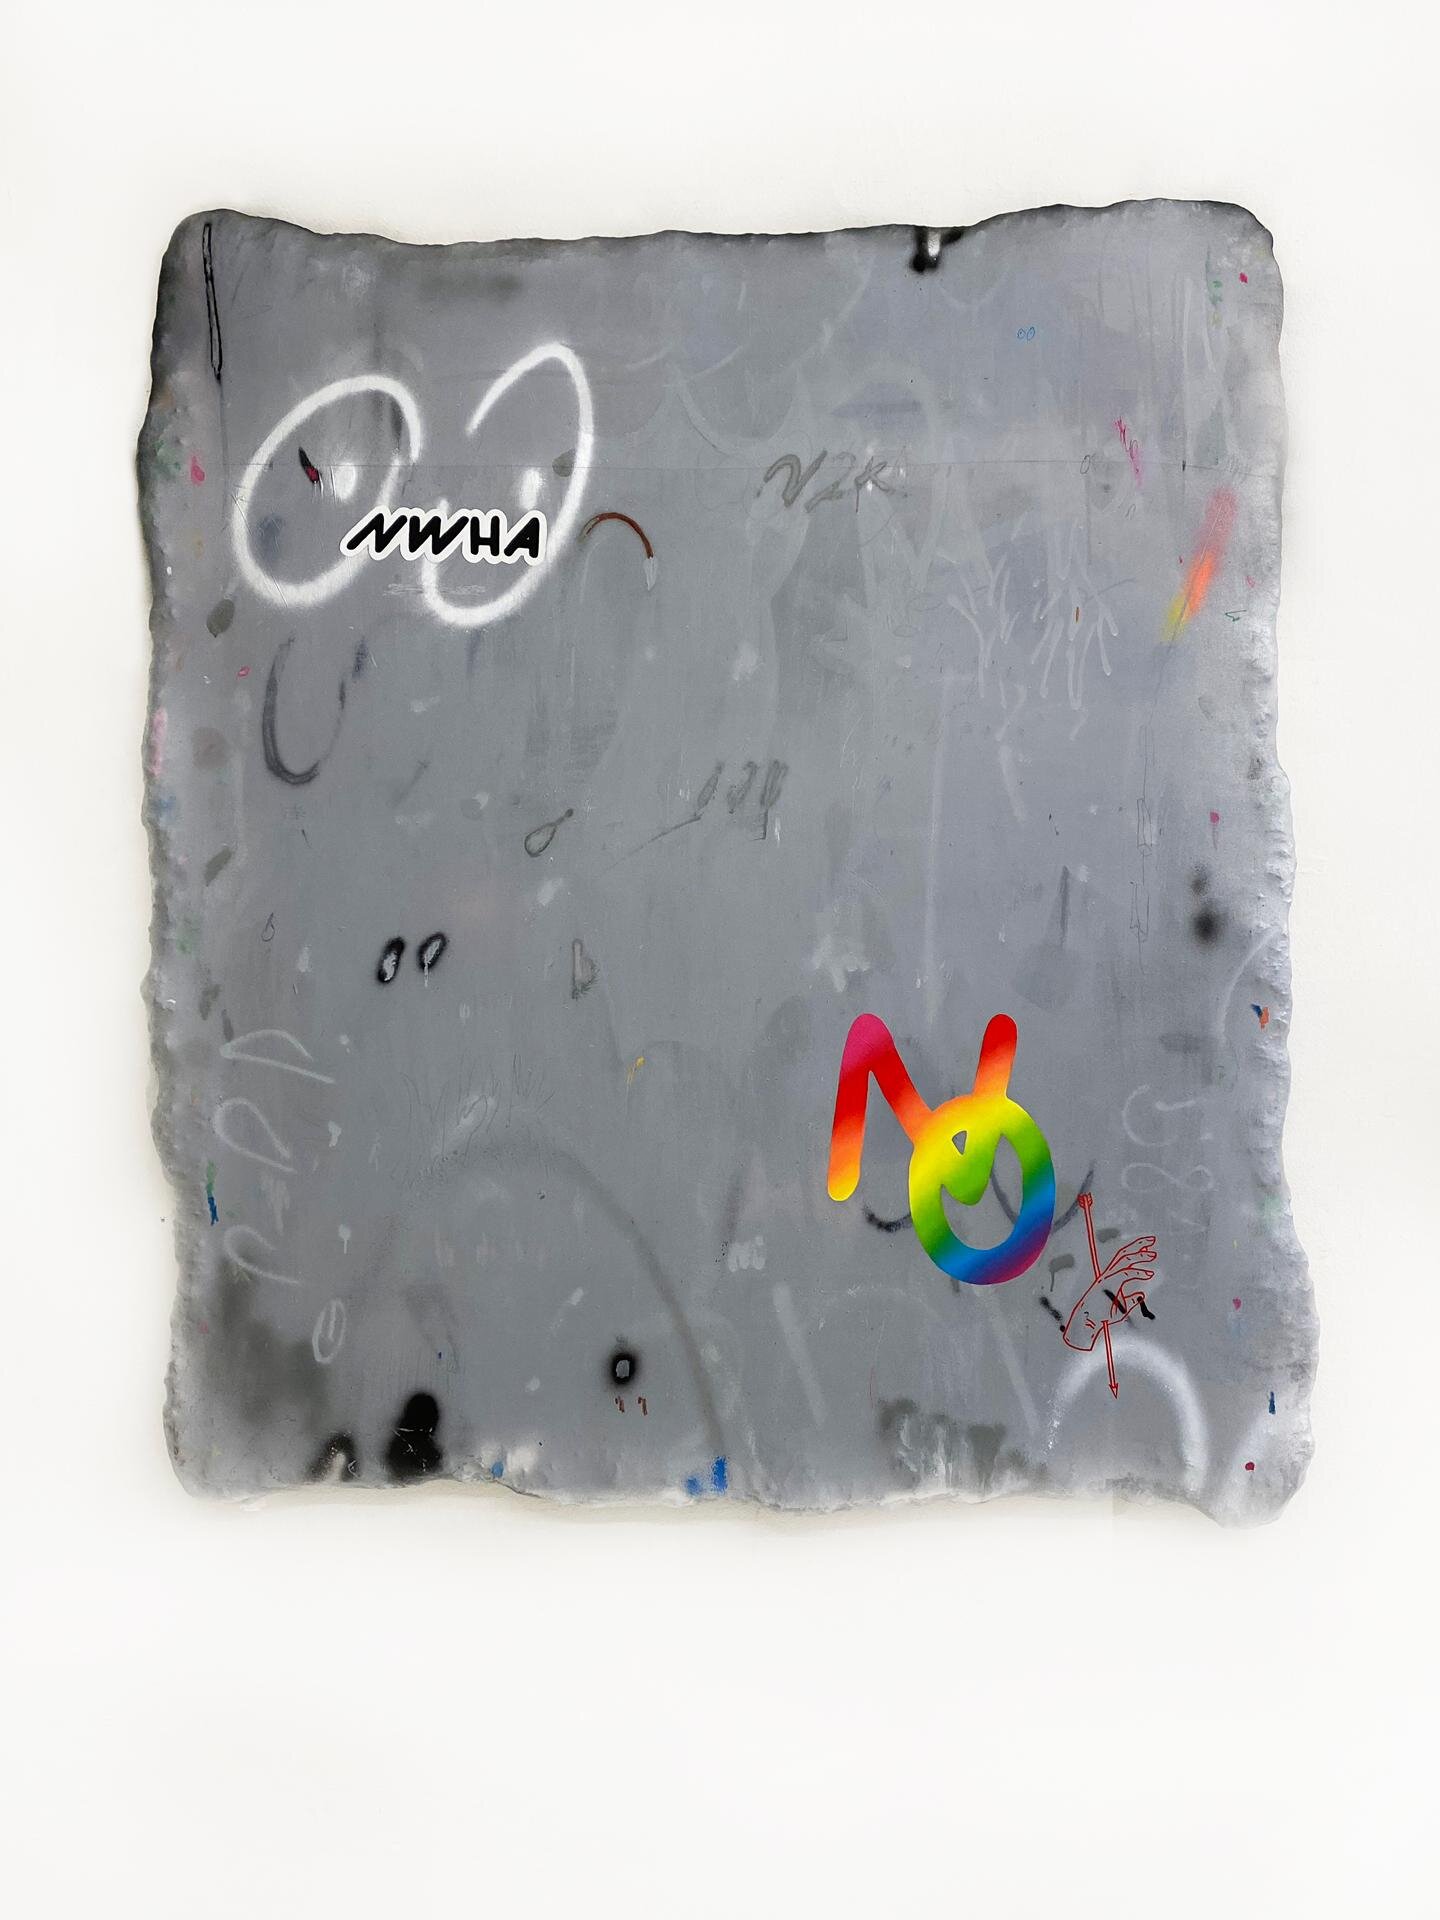  Chris Mar Ave, 2021, mixed media on canvas, 180cmx160cm 